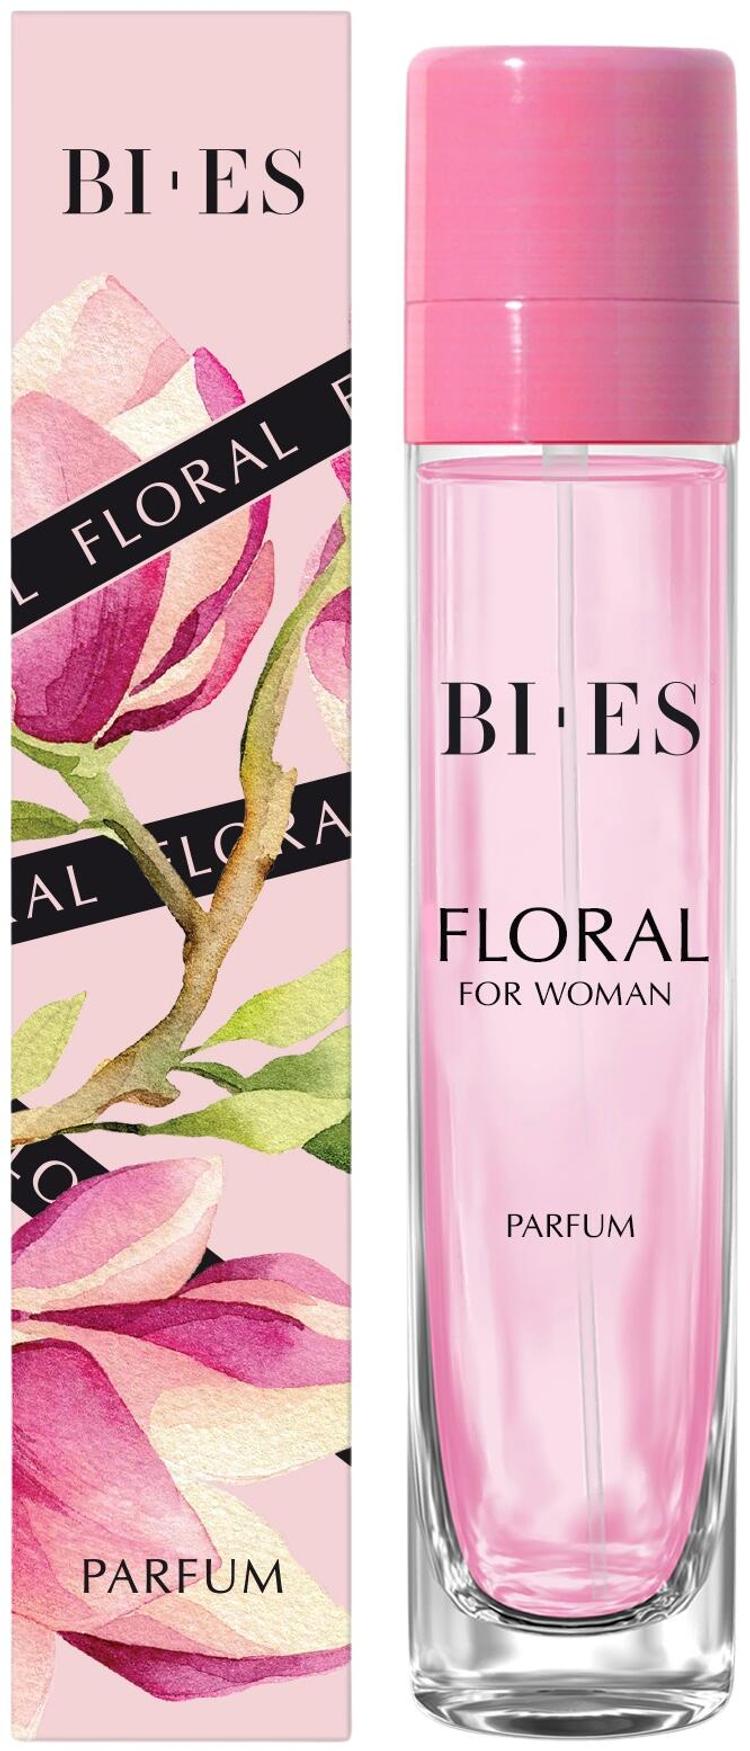 BI-ES Floral Parfum 15ml